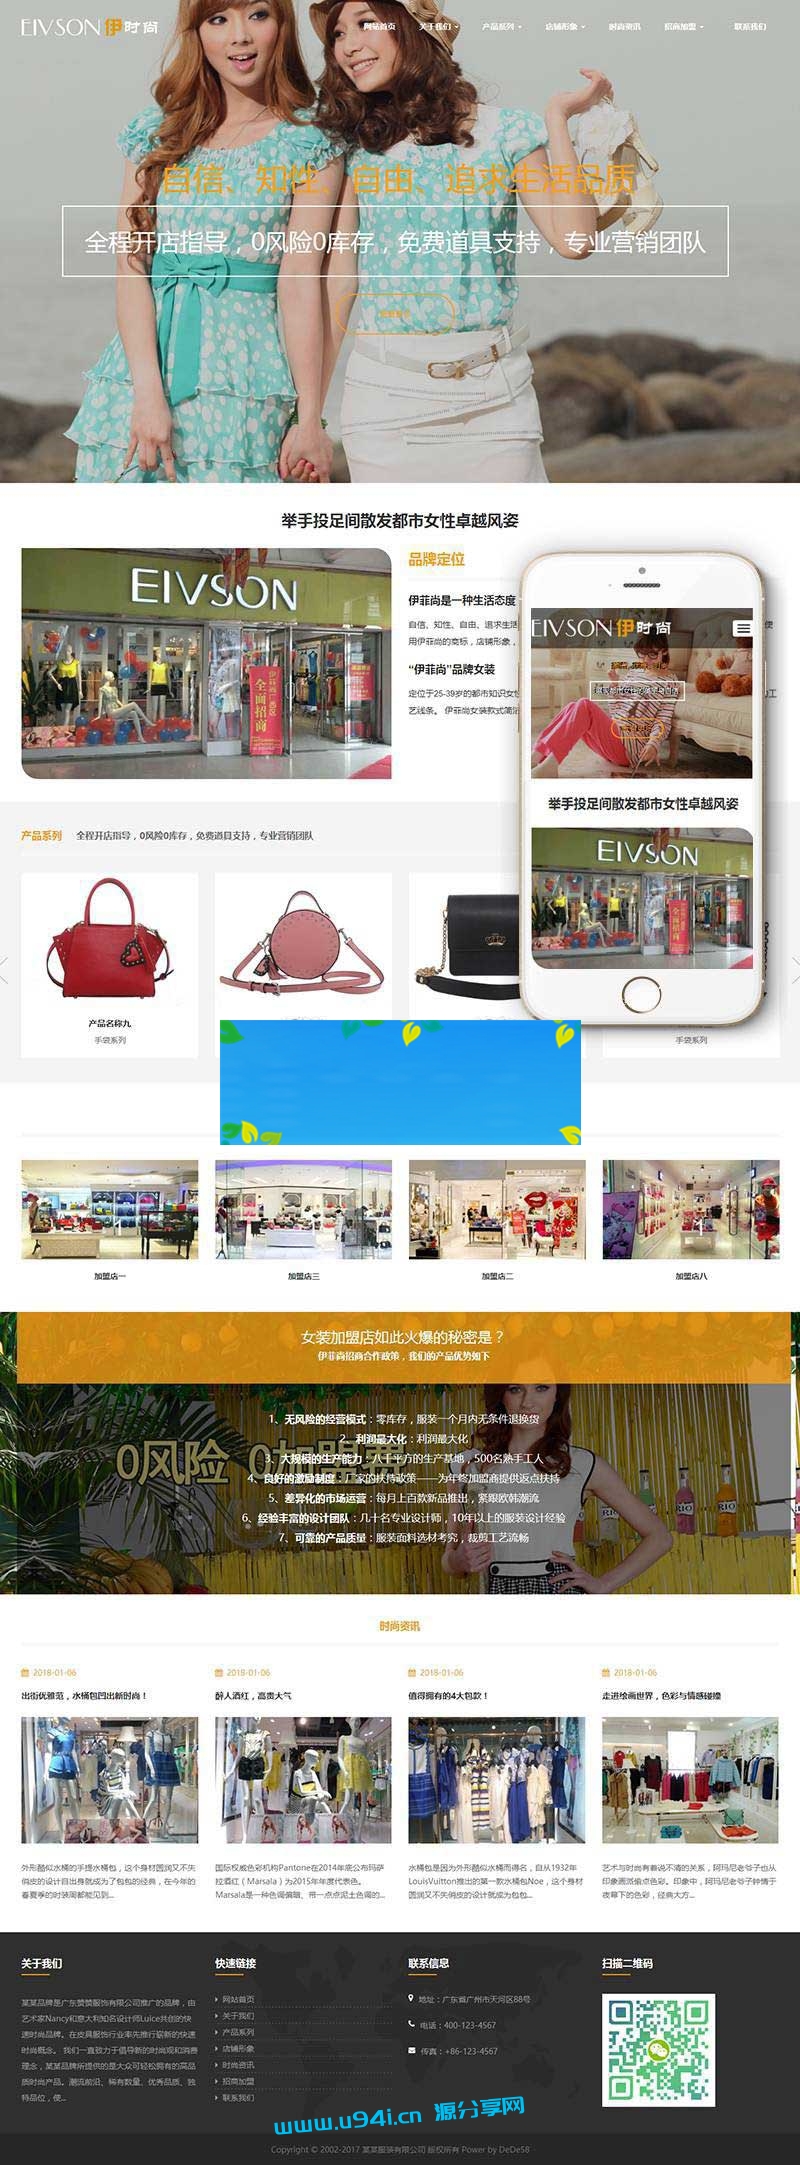 织梦dedecms响应式时尚服装包包企业网站模板(自适应手机移动端)